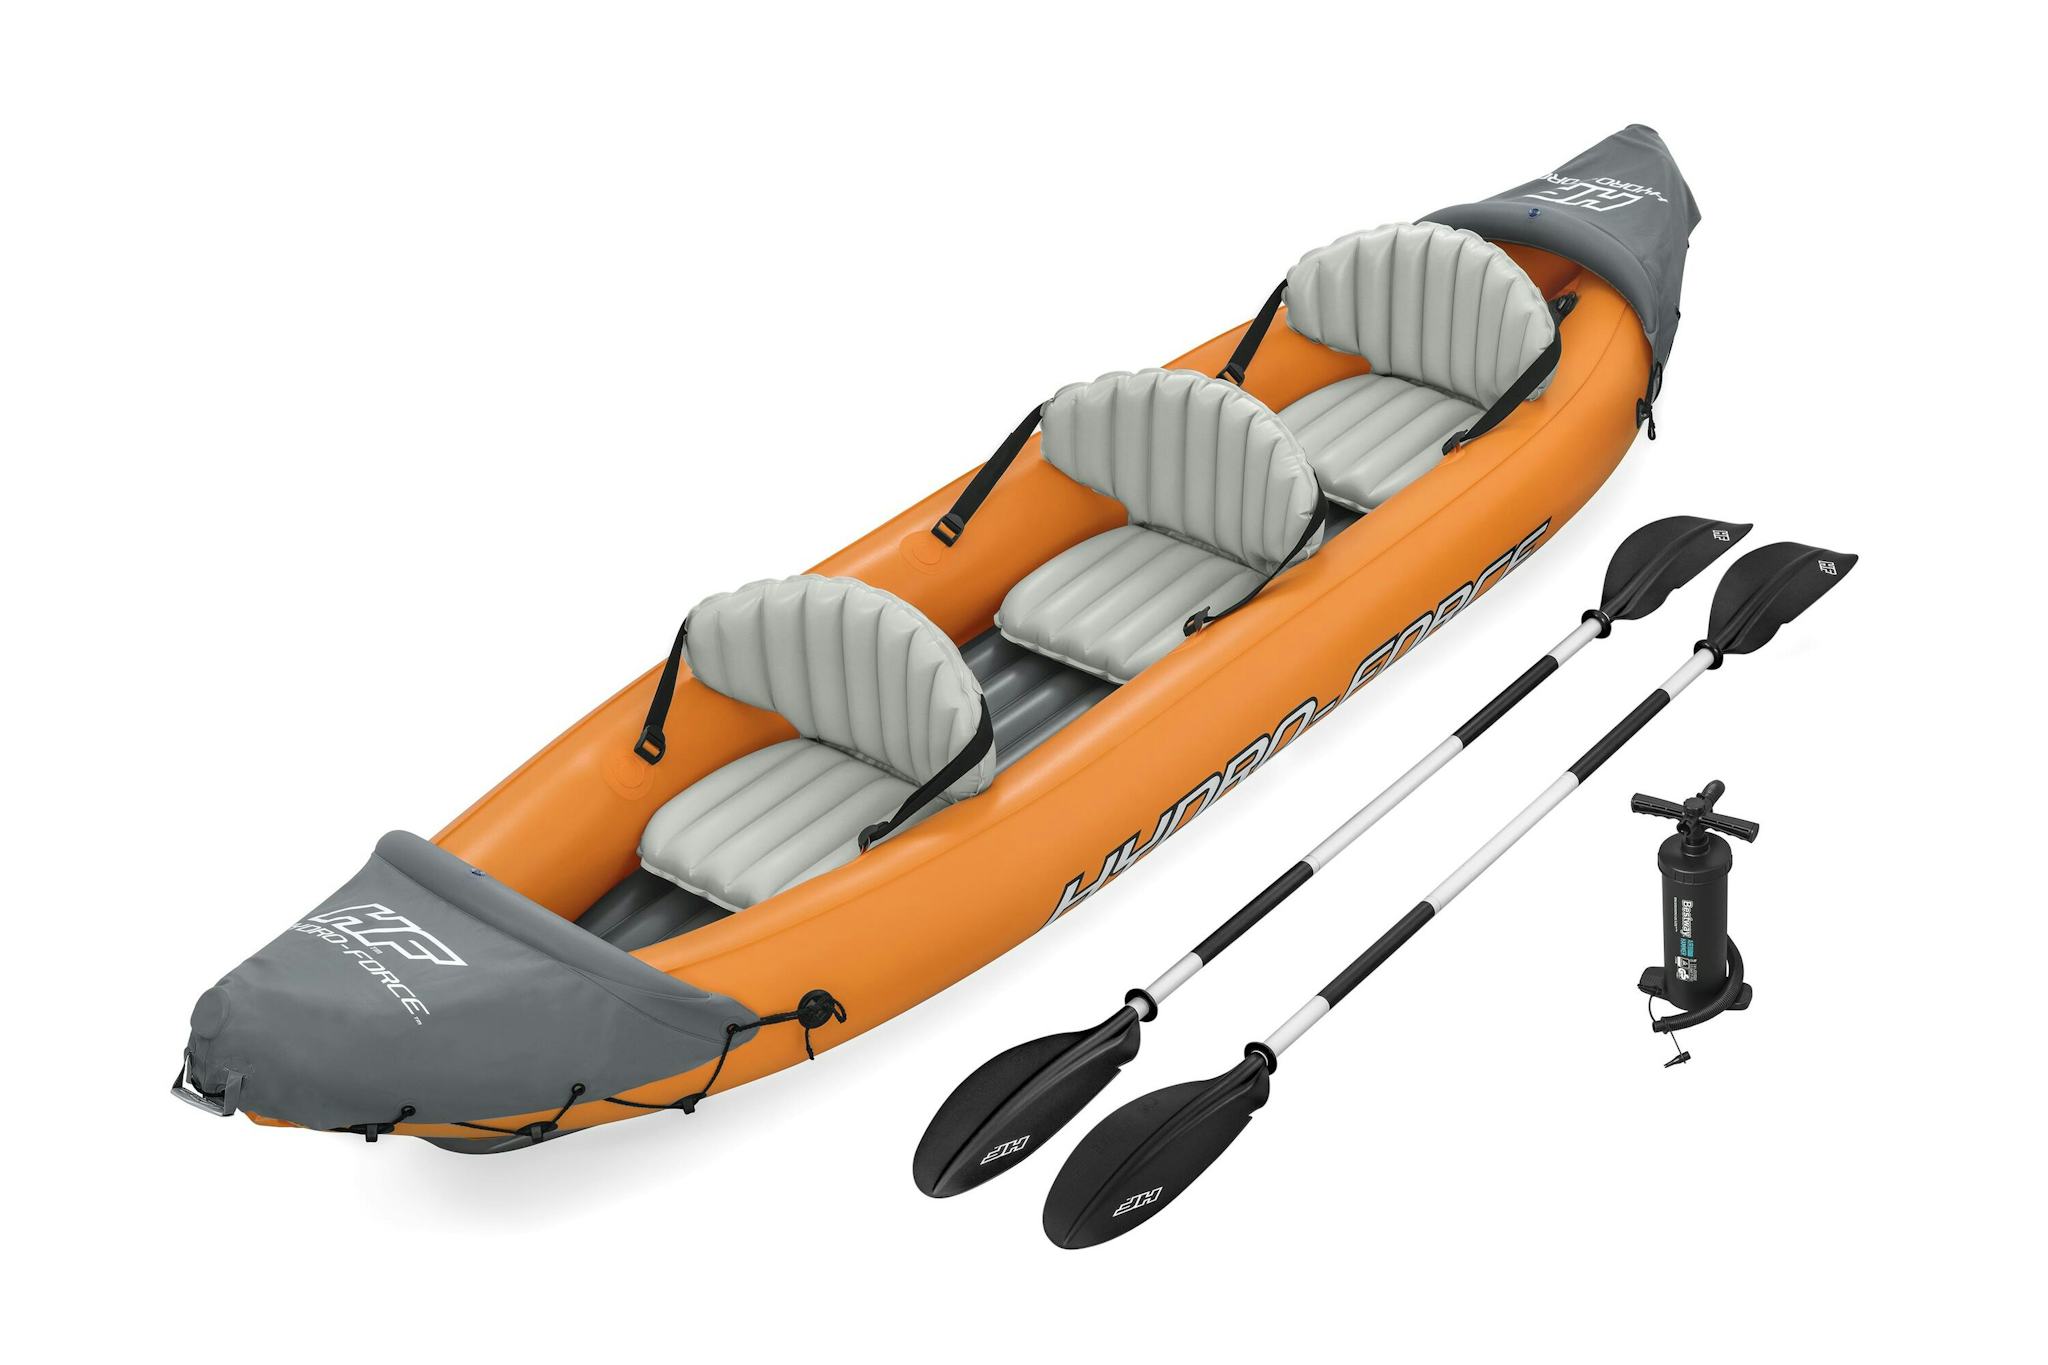 Sports d'eau Kayak gonflable Rapide X3 Hydro-Force™ 381 x 100cm, 3 places, 250 kg max, 2 pagaies, 2 ailerons amovibles et une pompe Bestway 2